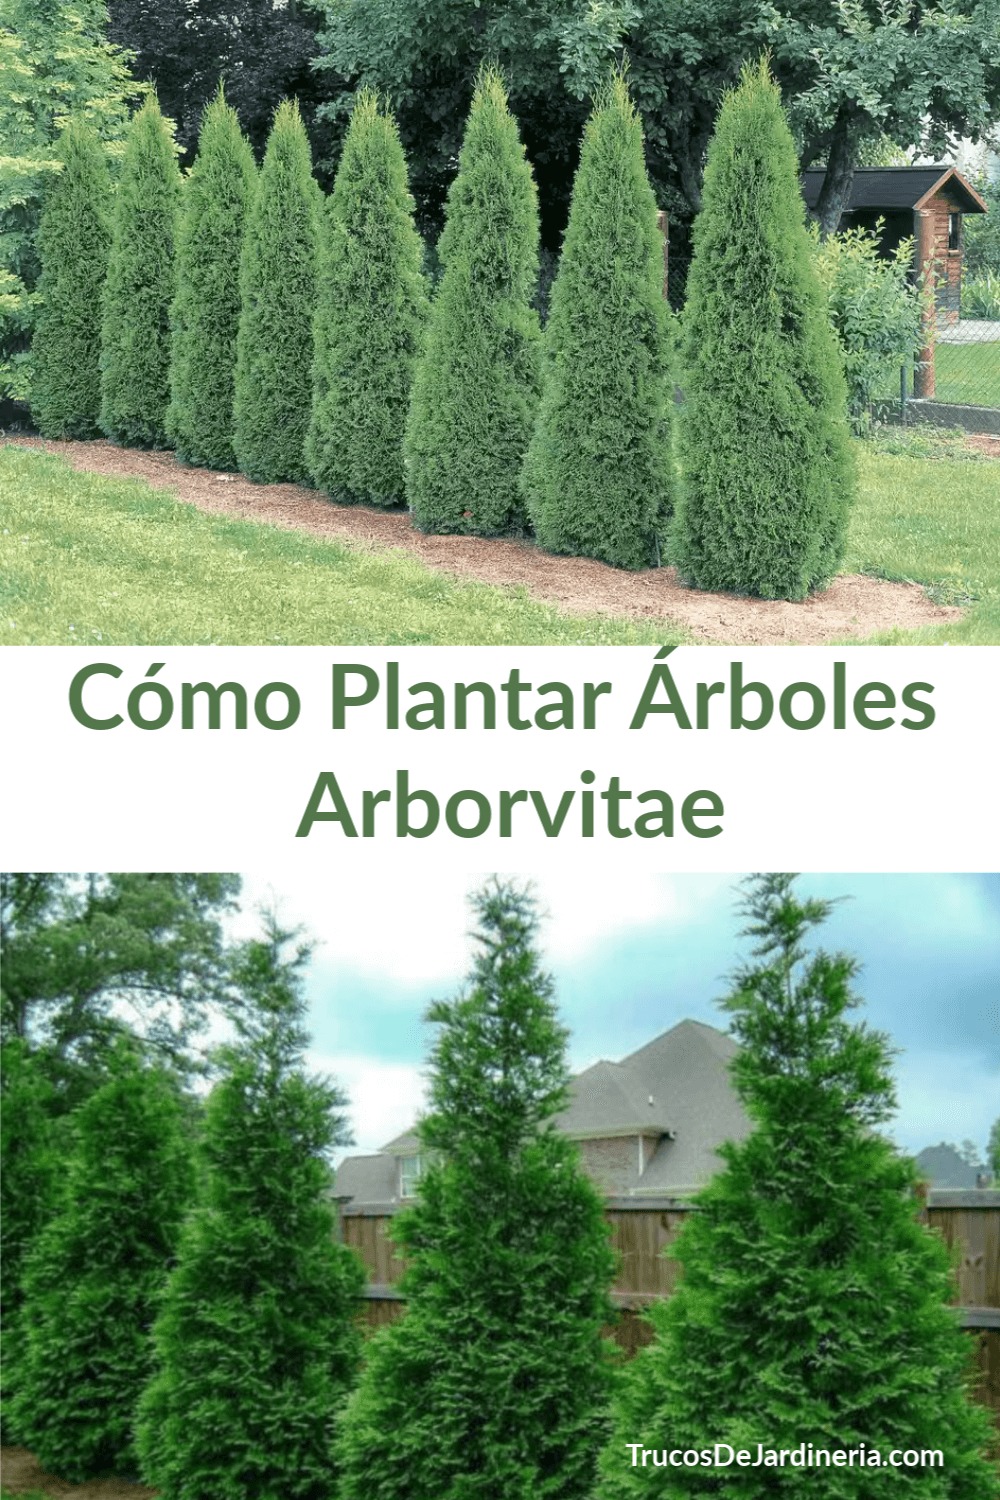 Cómo Plantar Árboles Arborvitae